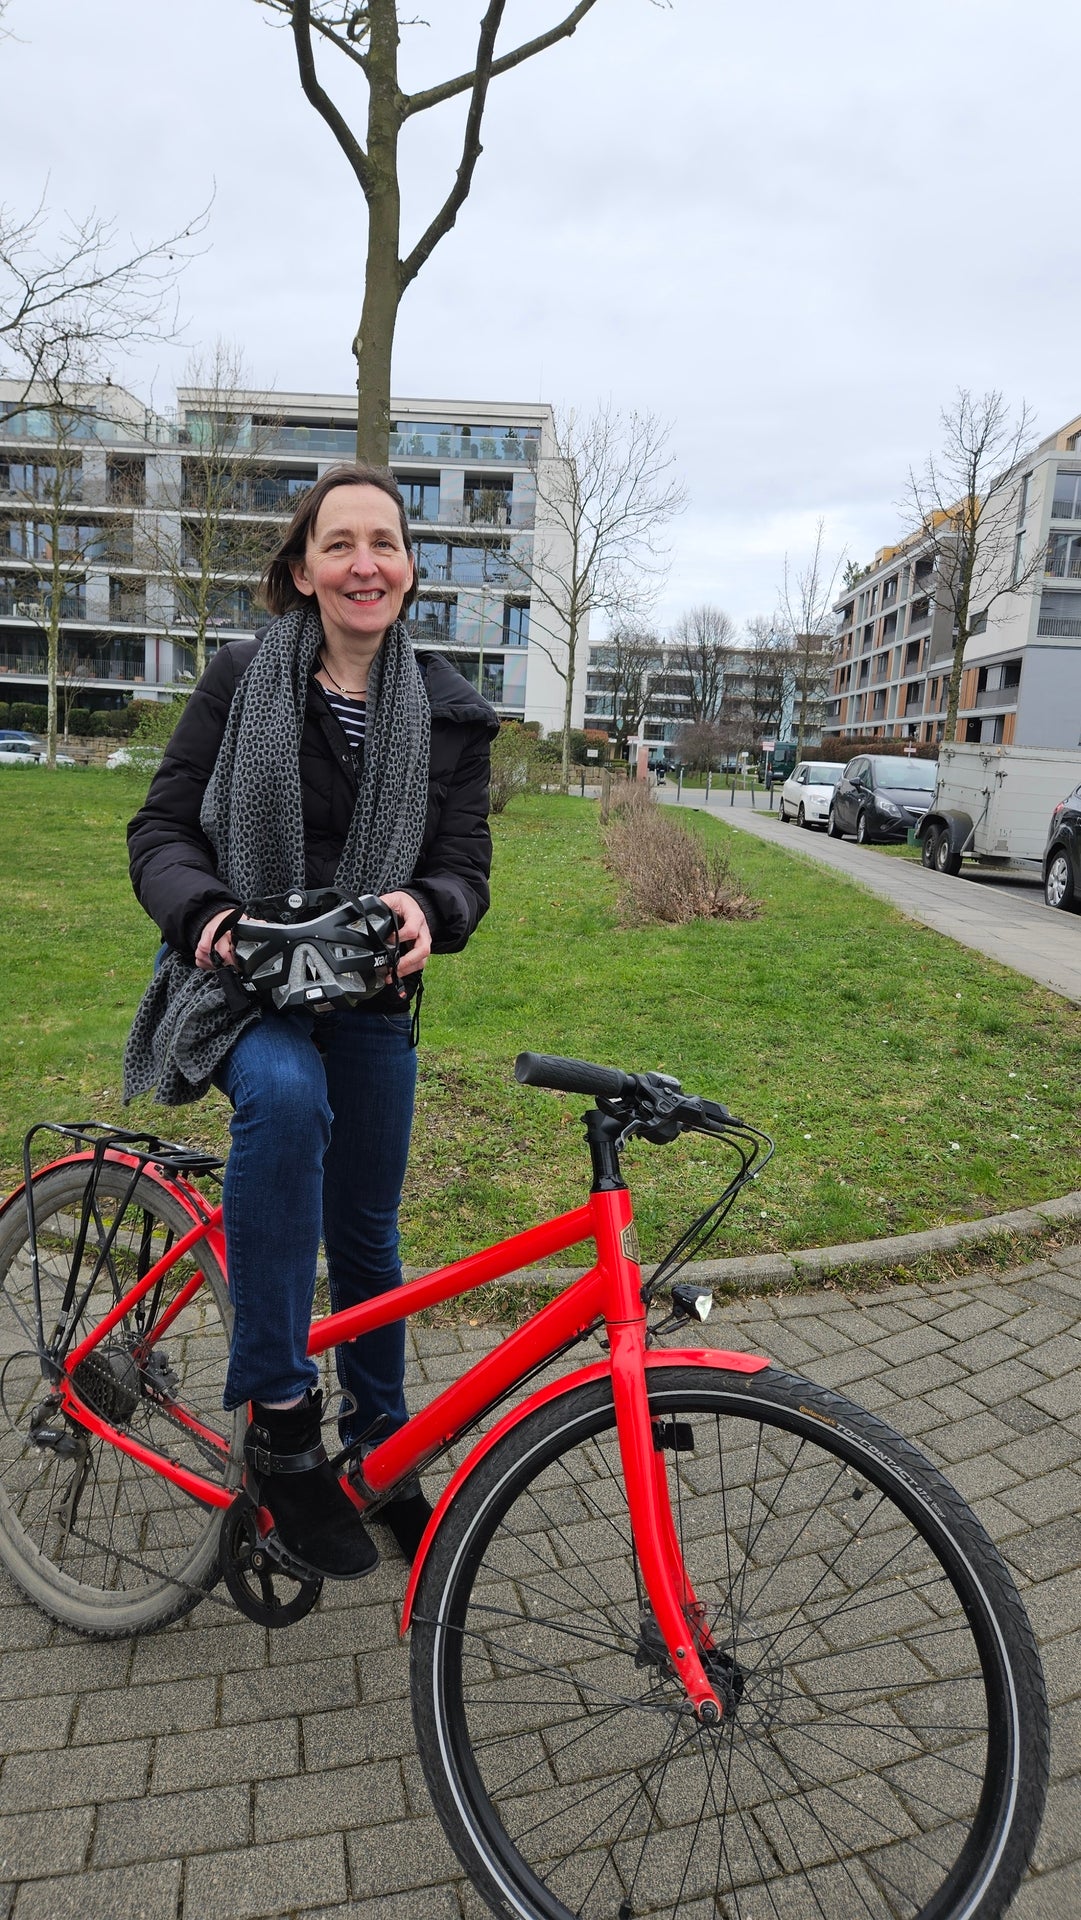 Unsere Kollegin Michaela Hünemeier sitzt auf ihrem roten Fahrrad, trägt ihren Helm in der Hand und lächelt in die Kamera. Hinter ihr sieht man eine grüne Wiese, im weiteren Hintergrund stehen Wohnhäuser.